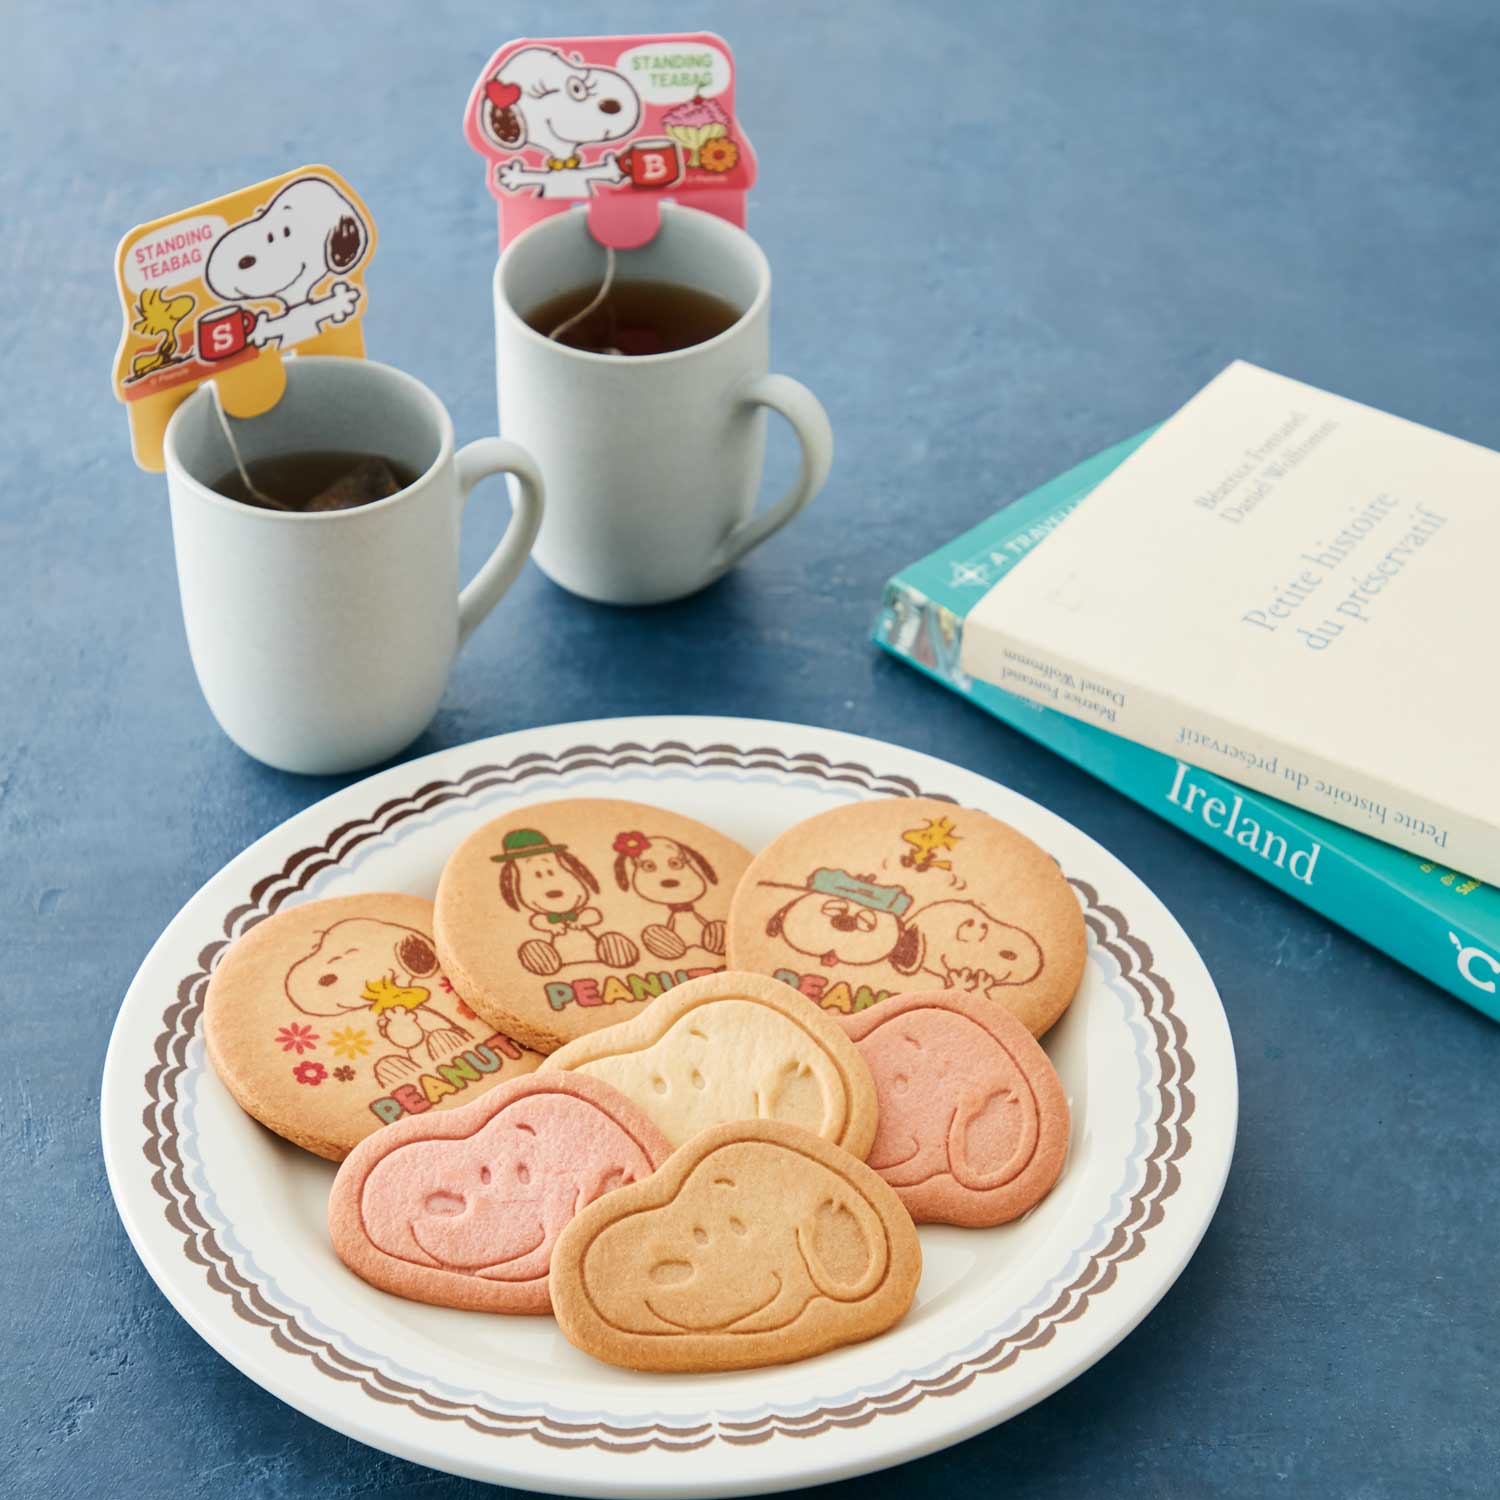 【ピーナッツ/PEANUTS】【送料無料】 「スヌーピー」クッキー & 紅茶セット(27点入)